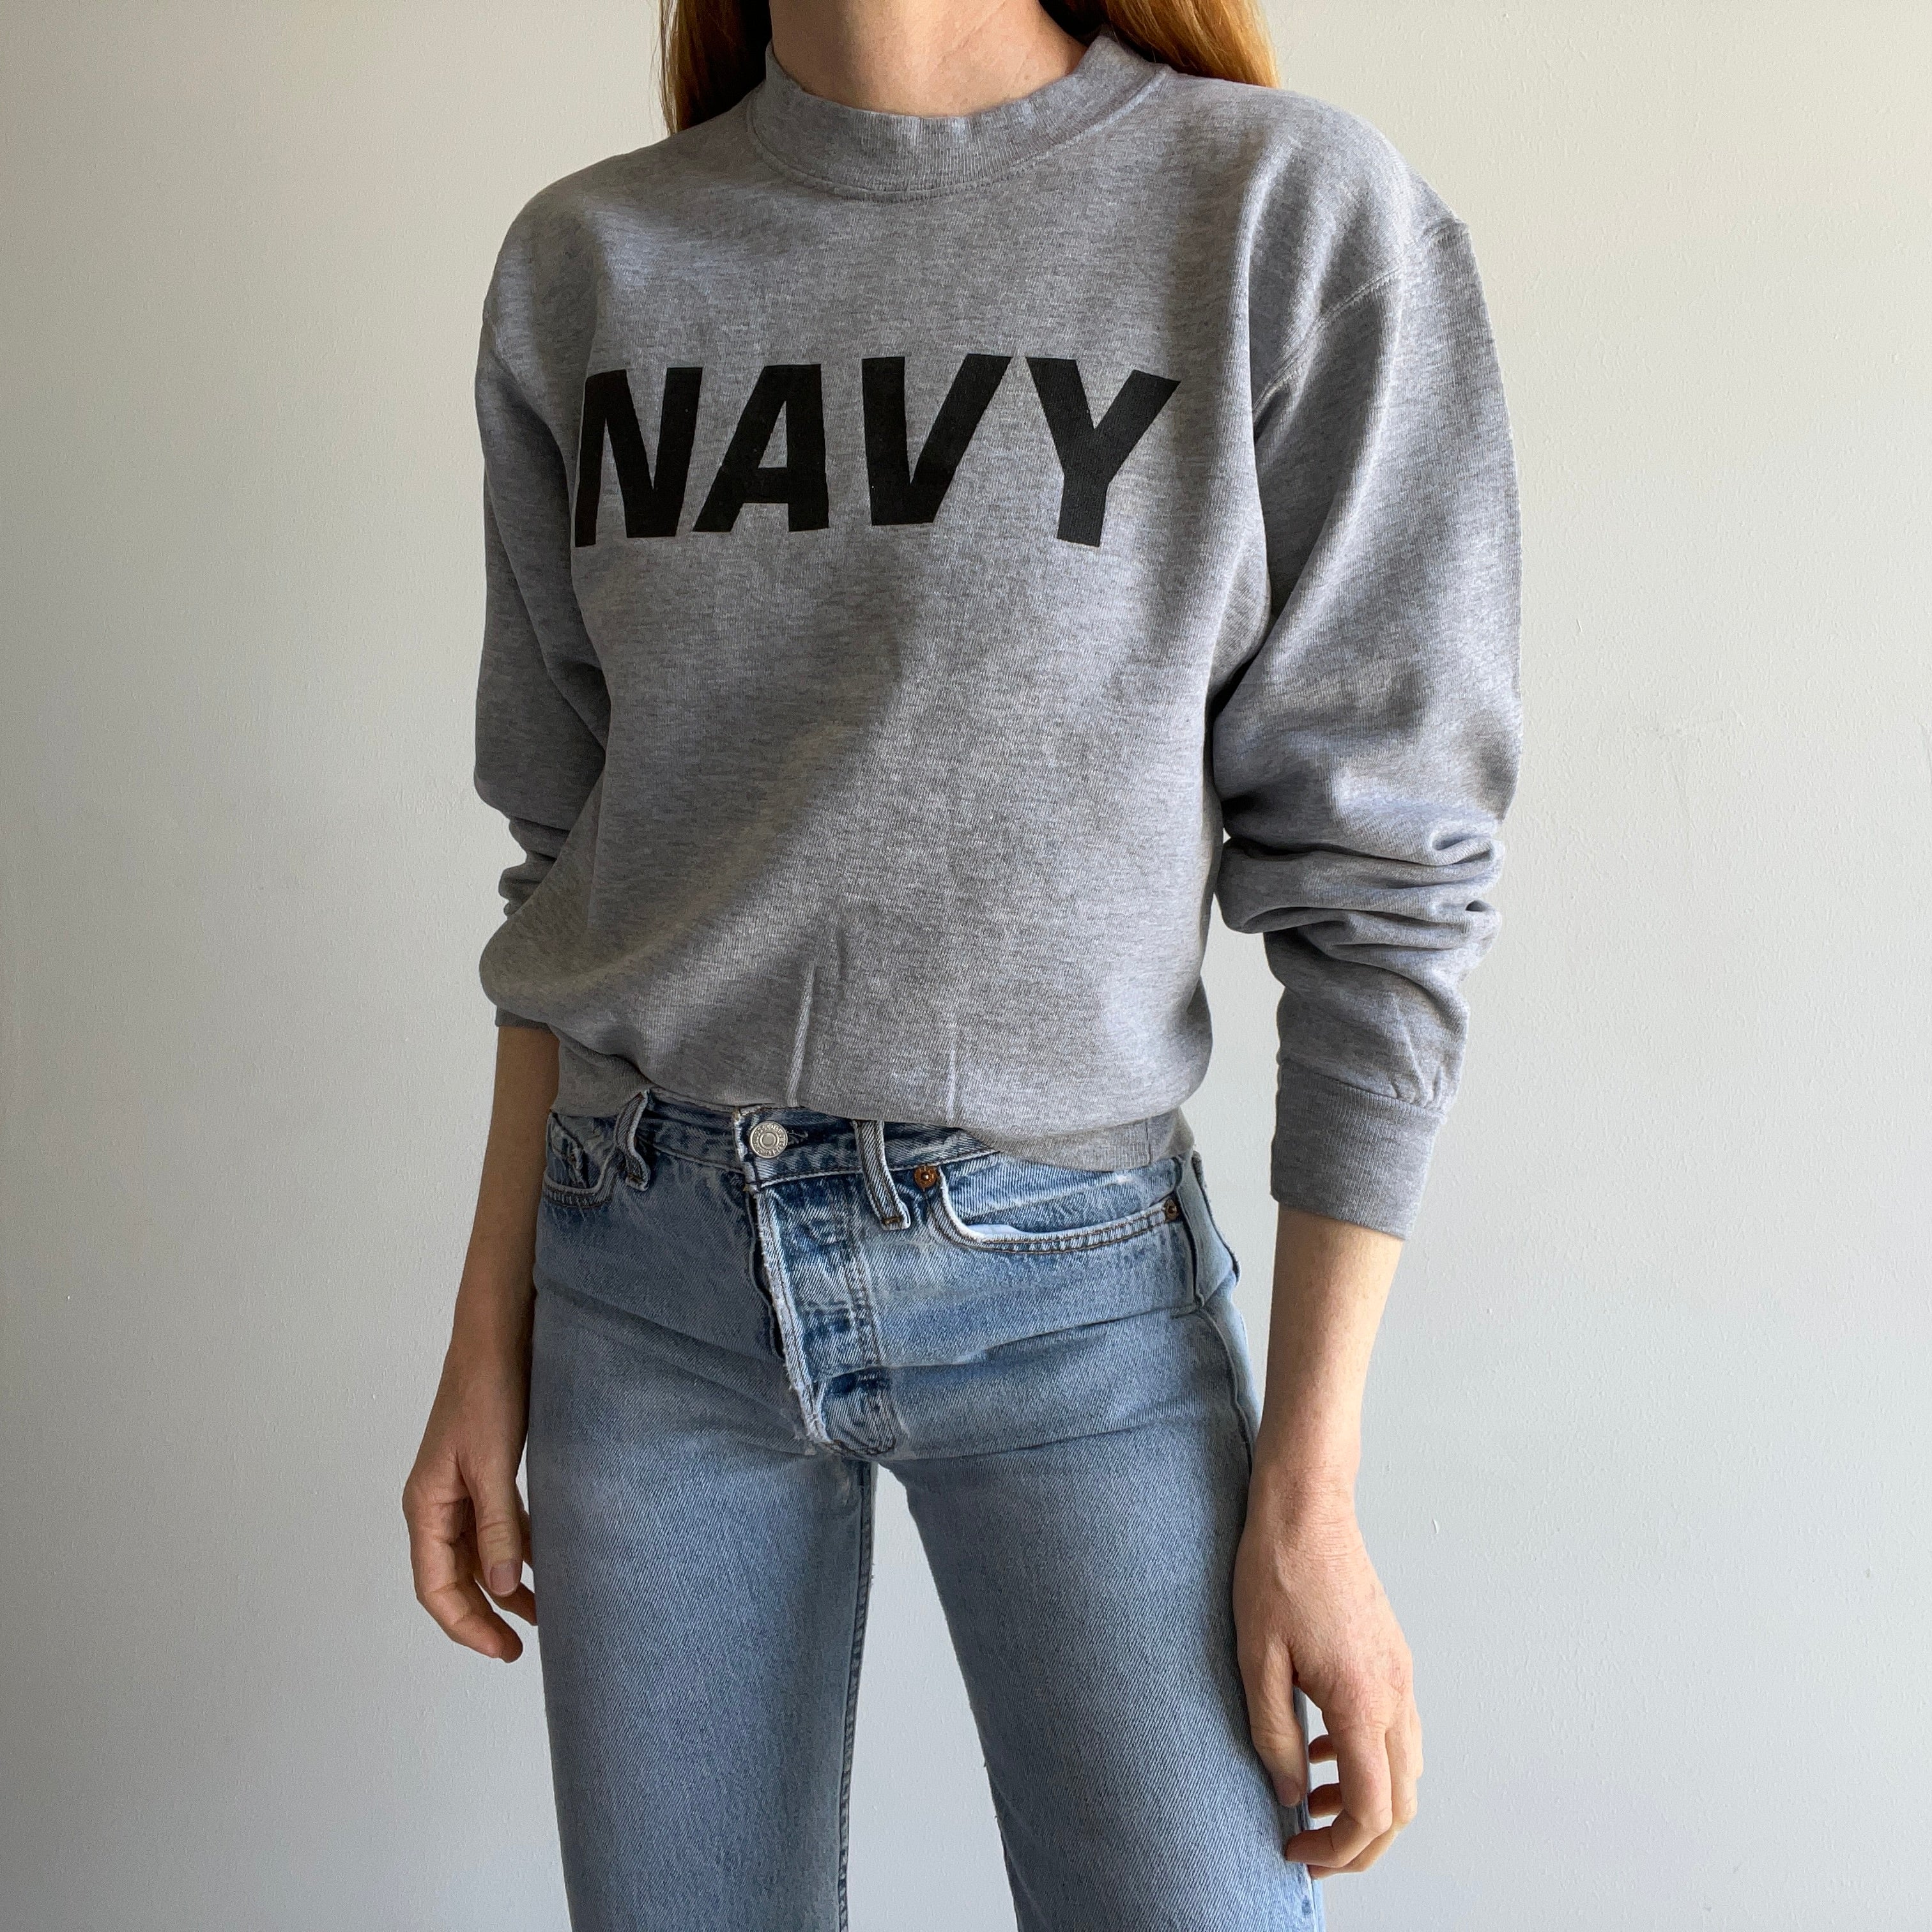 1980/90s Navy Sweatshirt